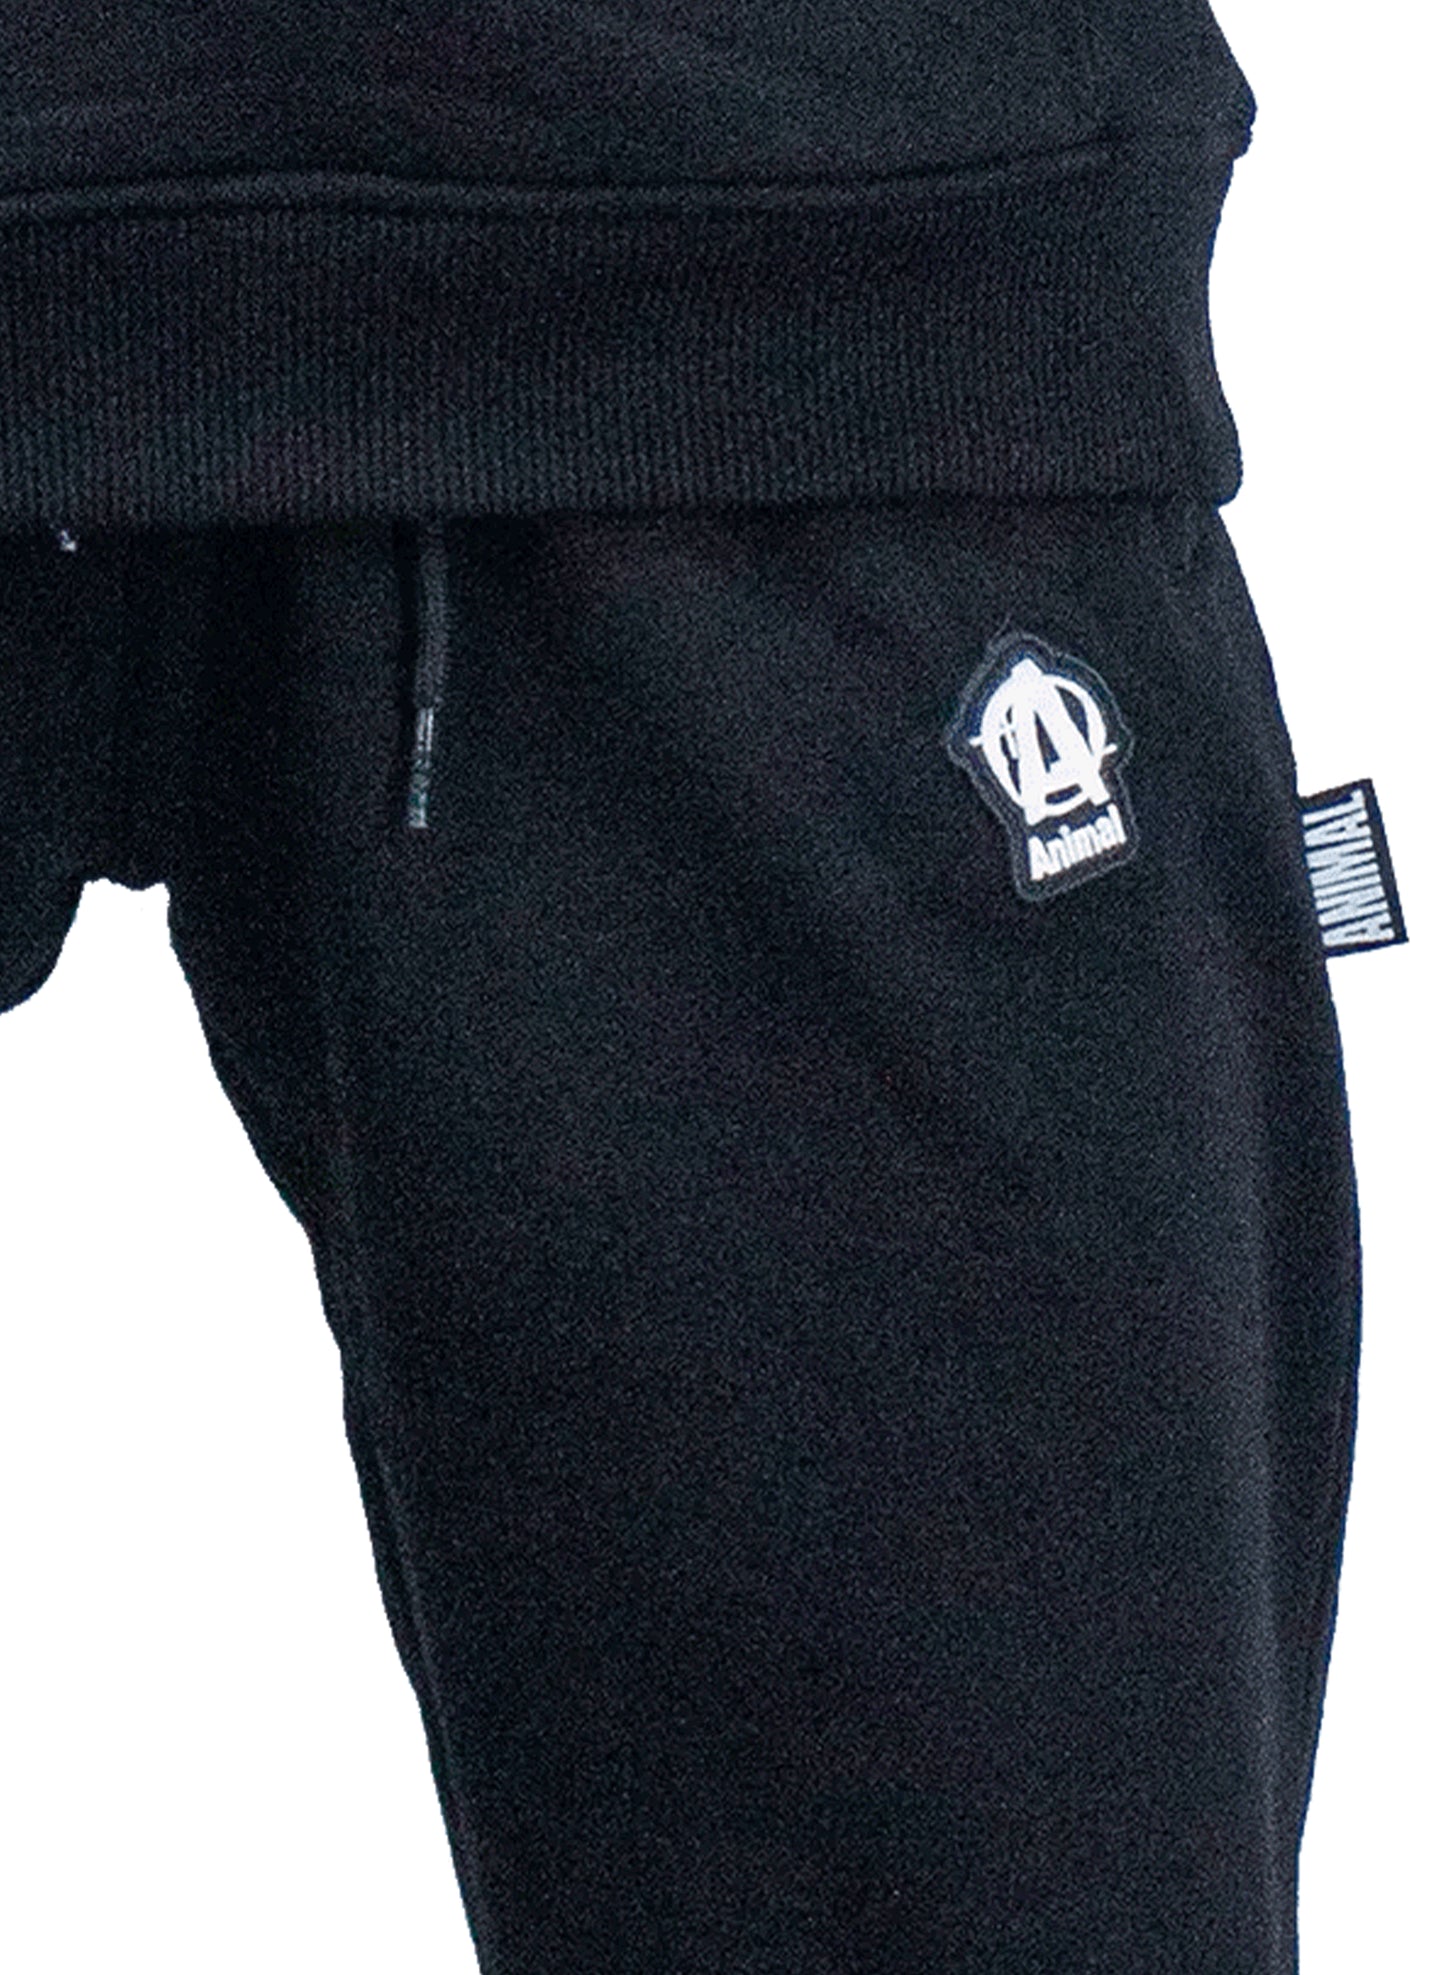 Premium Collection - "A" Logo Sweatpants